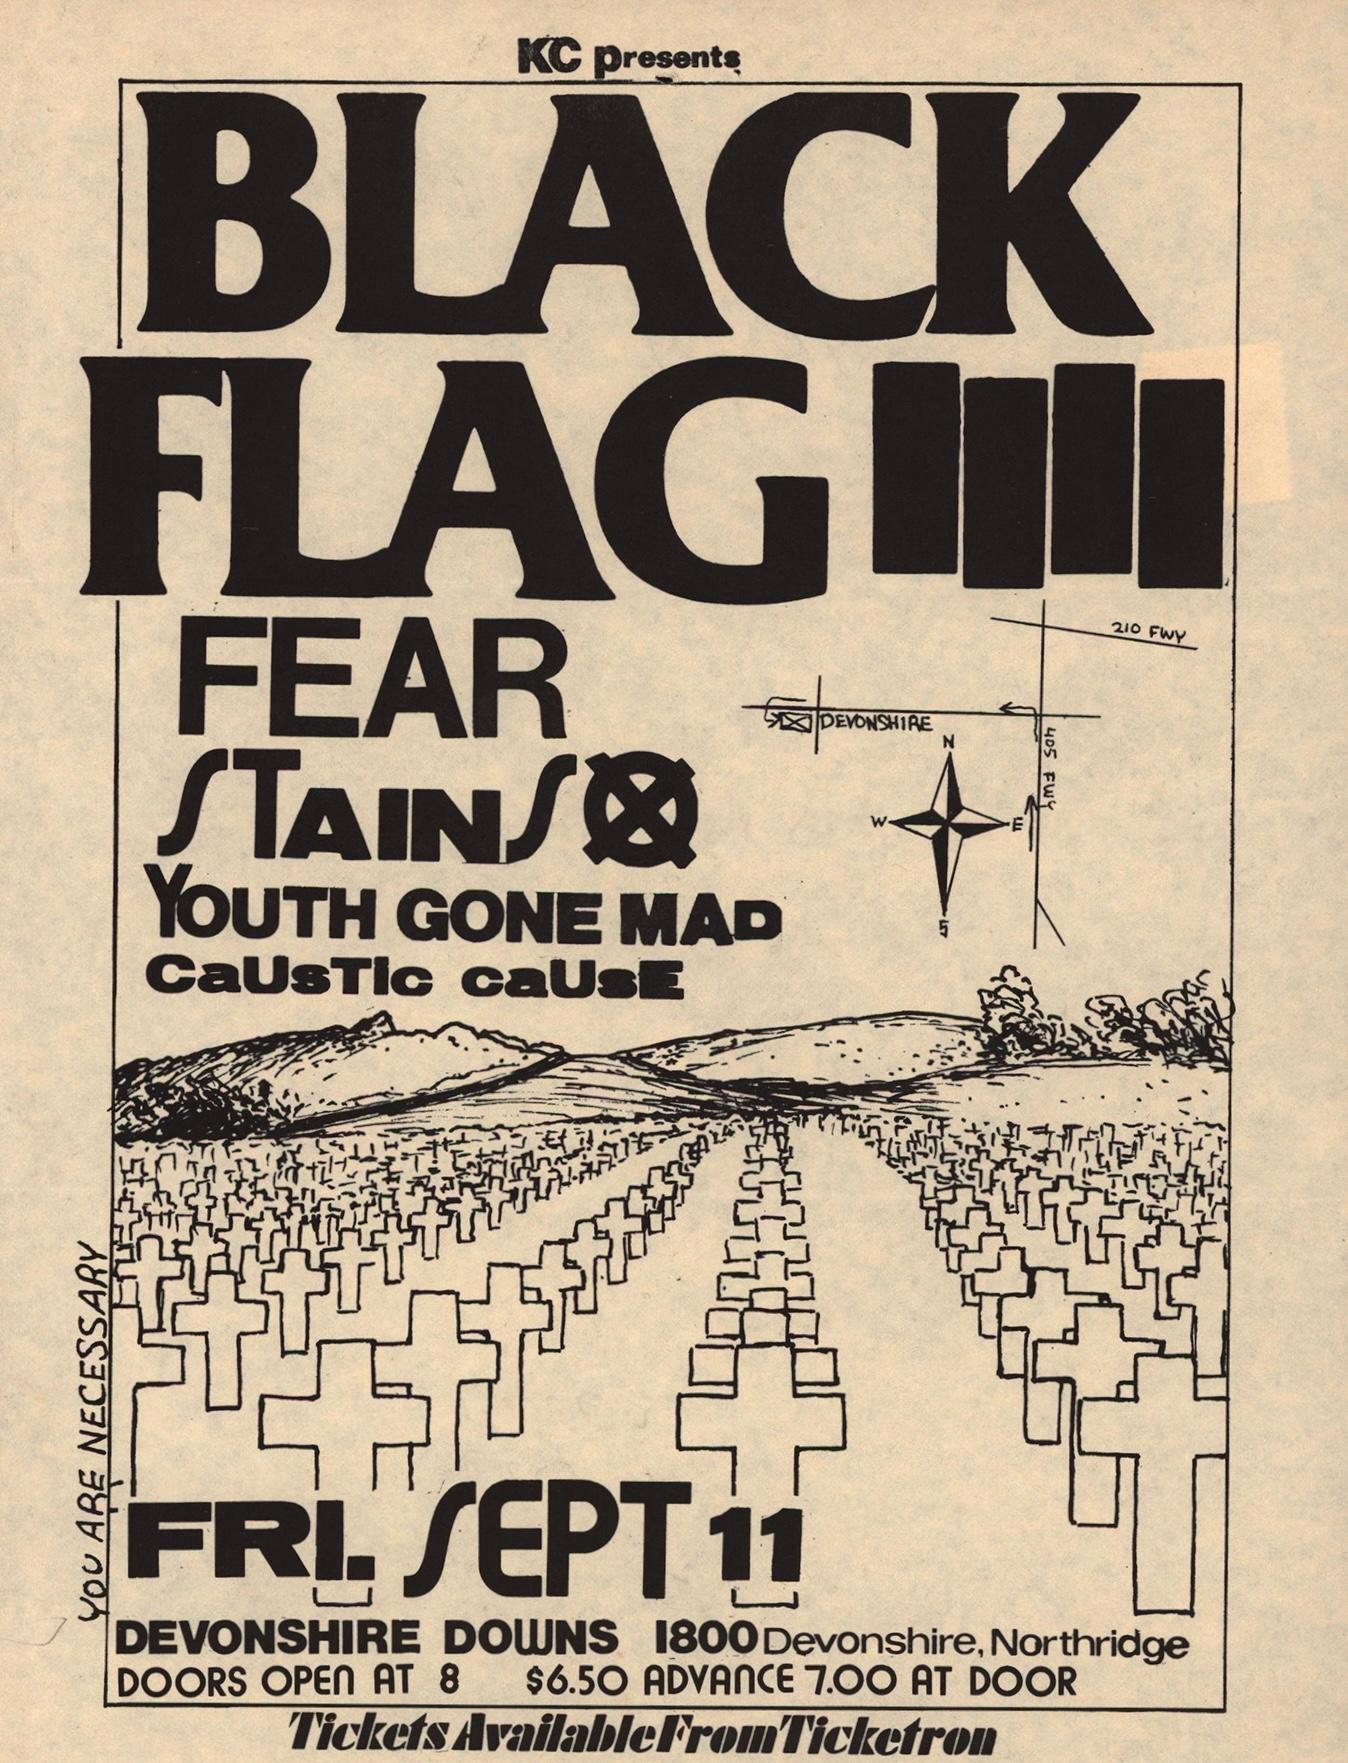 Raymond Pettibon Black Flag, 1981 : 
Rare flyer Black Flag Punk de Raymond Pettibon - illustré par Pettibon à l'occasion de : Black Flag, Stains, Youth Gone Mad, Caustic Cause, Fear at Devonshire Downs, 11 septembre 1981. Un exemplaire